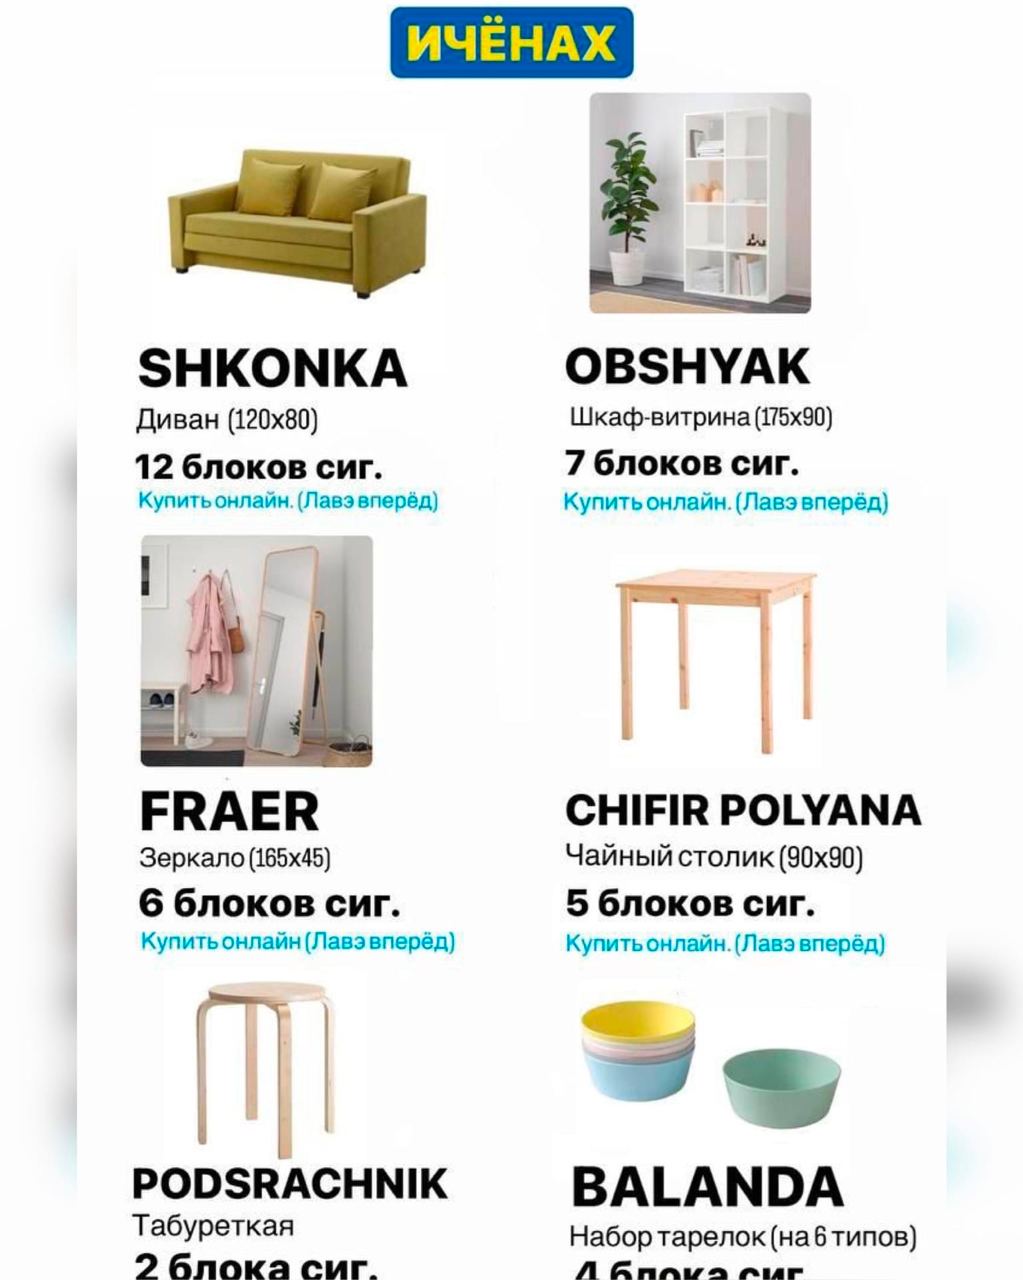 Производство мебели для икеа в россии